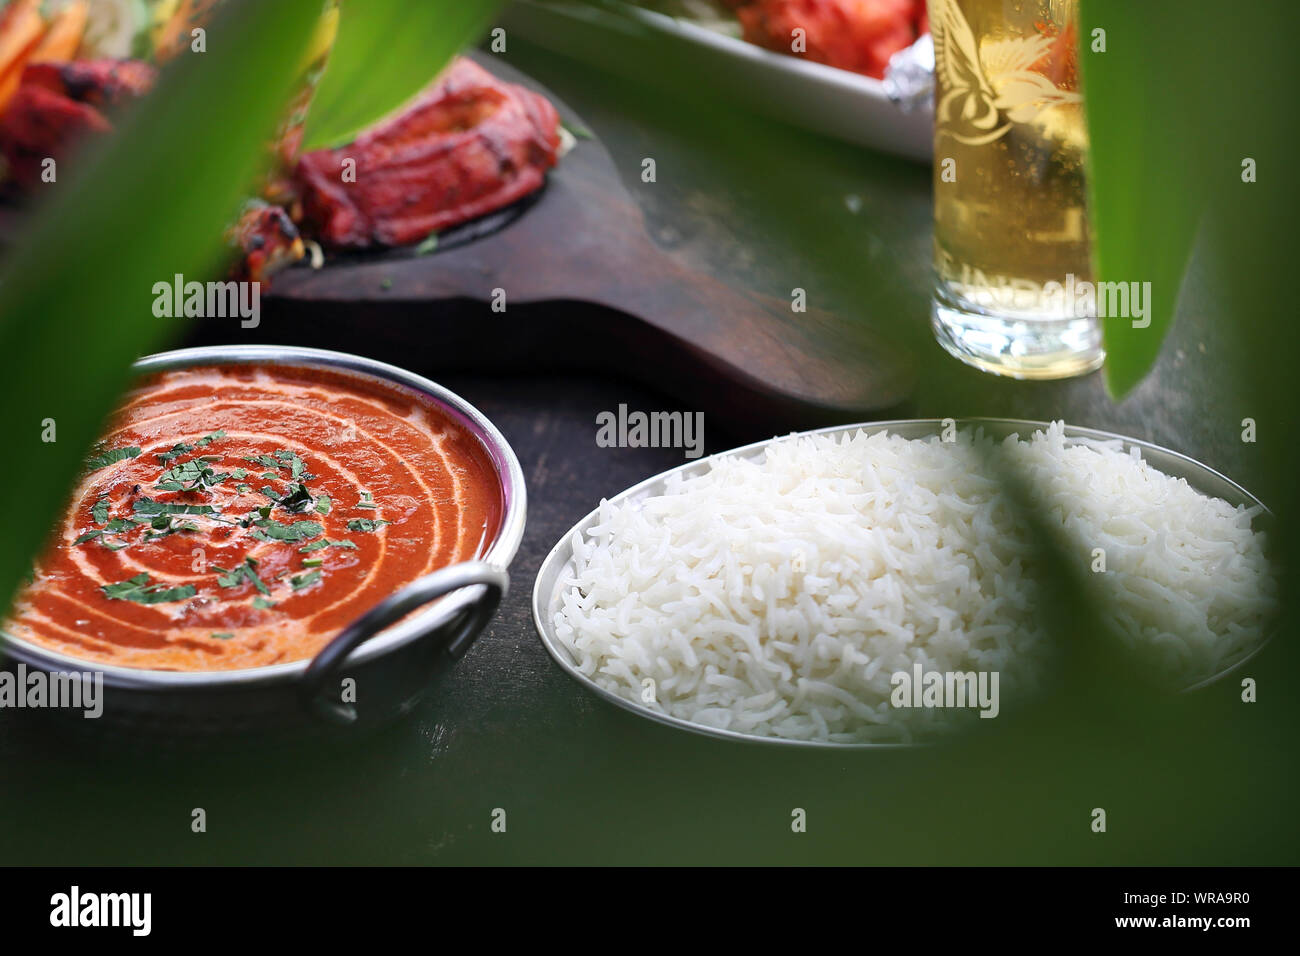 La cuisine thaïlandaise, des plats au curry aromatique. Plats colorés. Banque D'Images